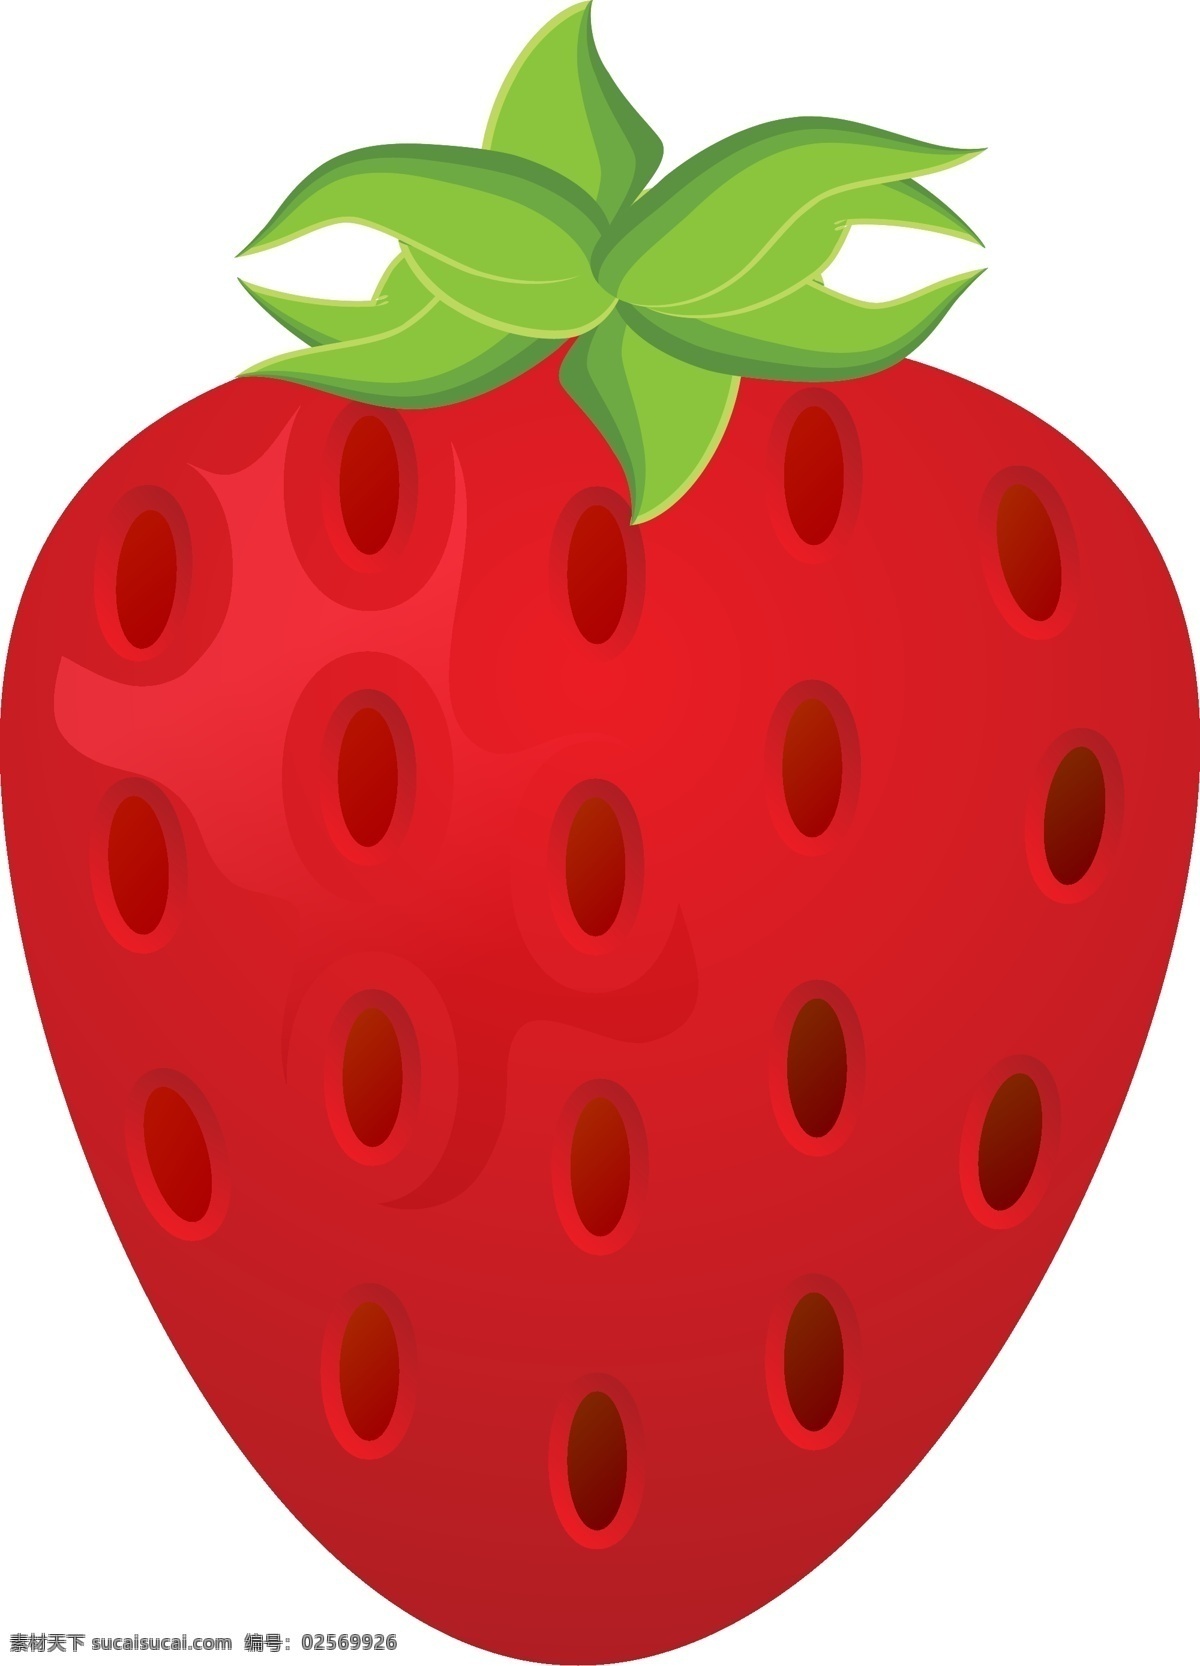 草莓 季 扁平 卡通 矢量 卡通草莓 扁平化 扁平草莓 红黑籽 晶莹剔透 整个草莓 深红色草莓 草莓季 可爱草莓